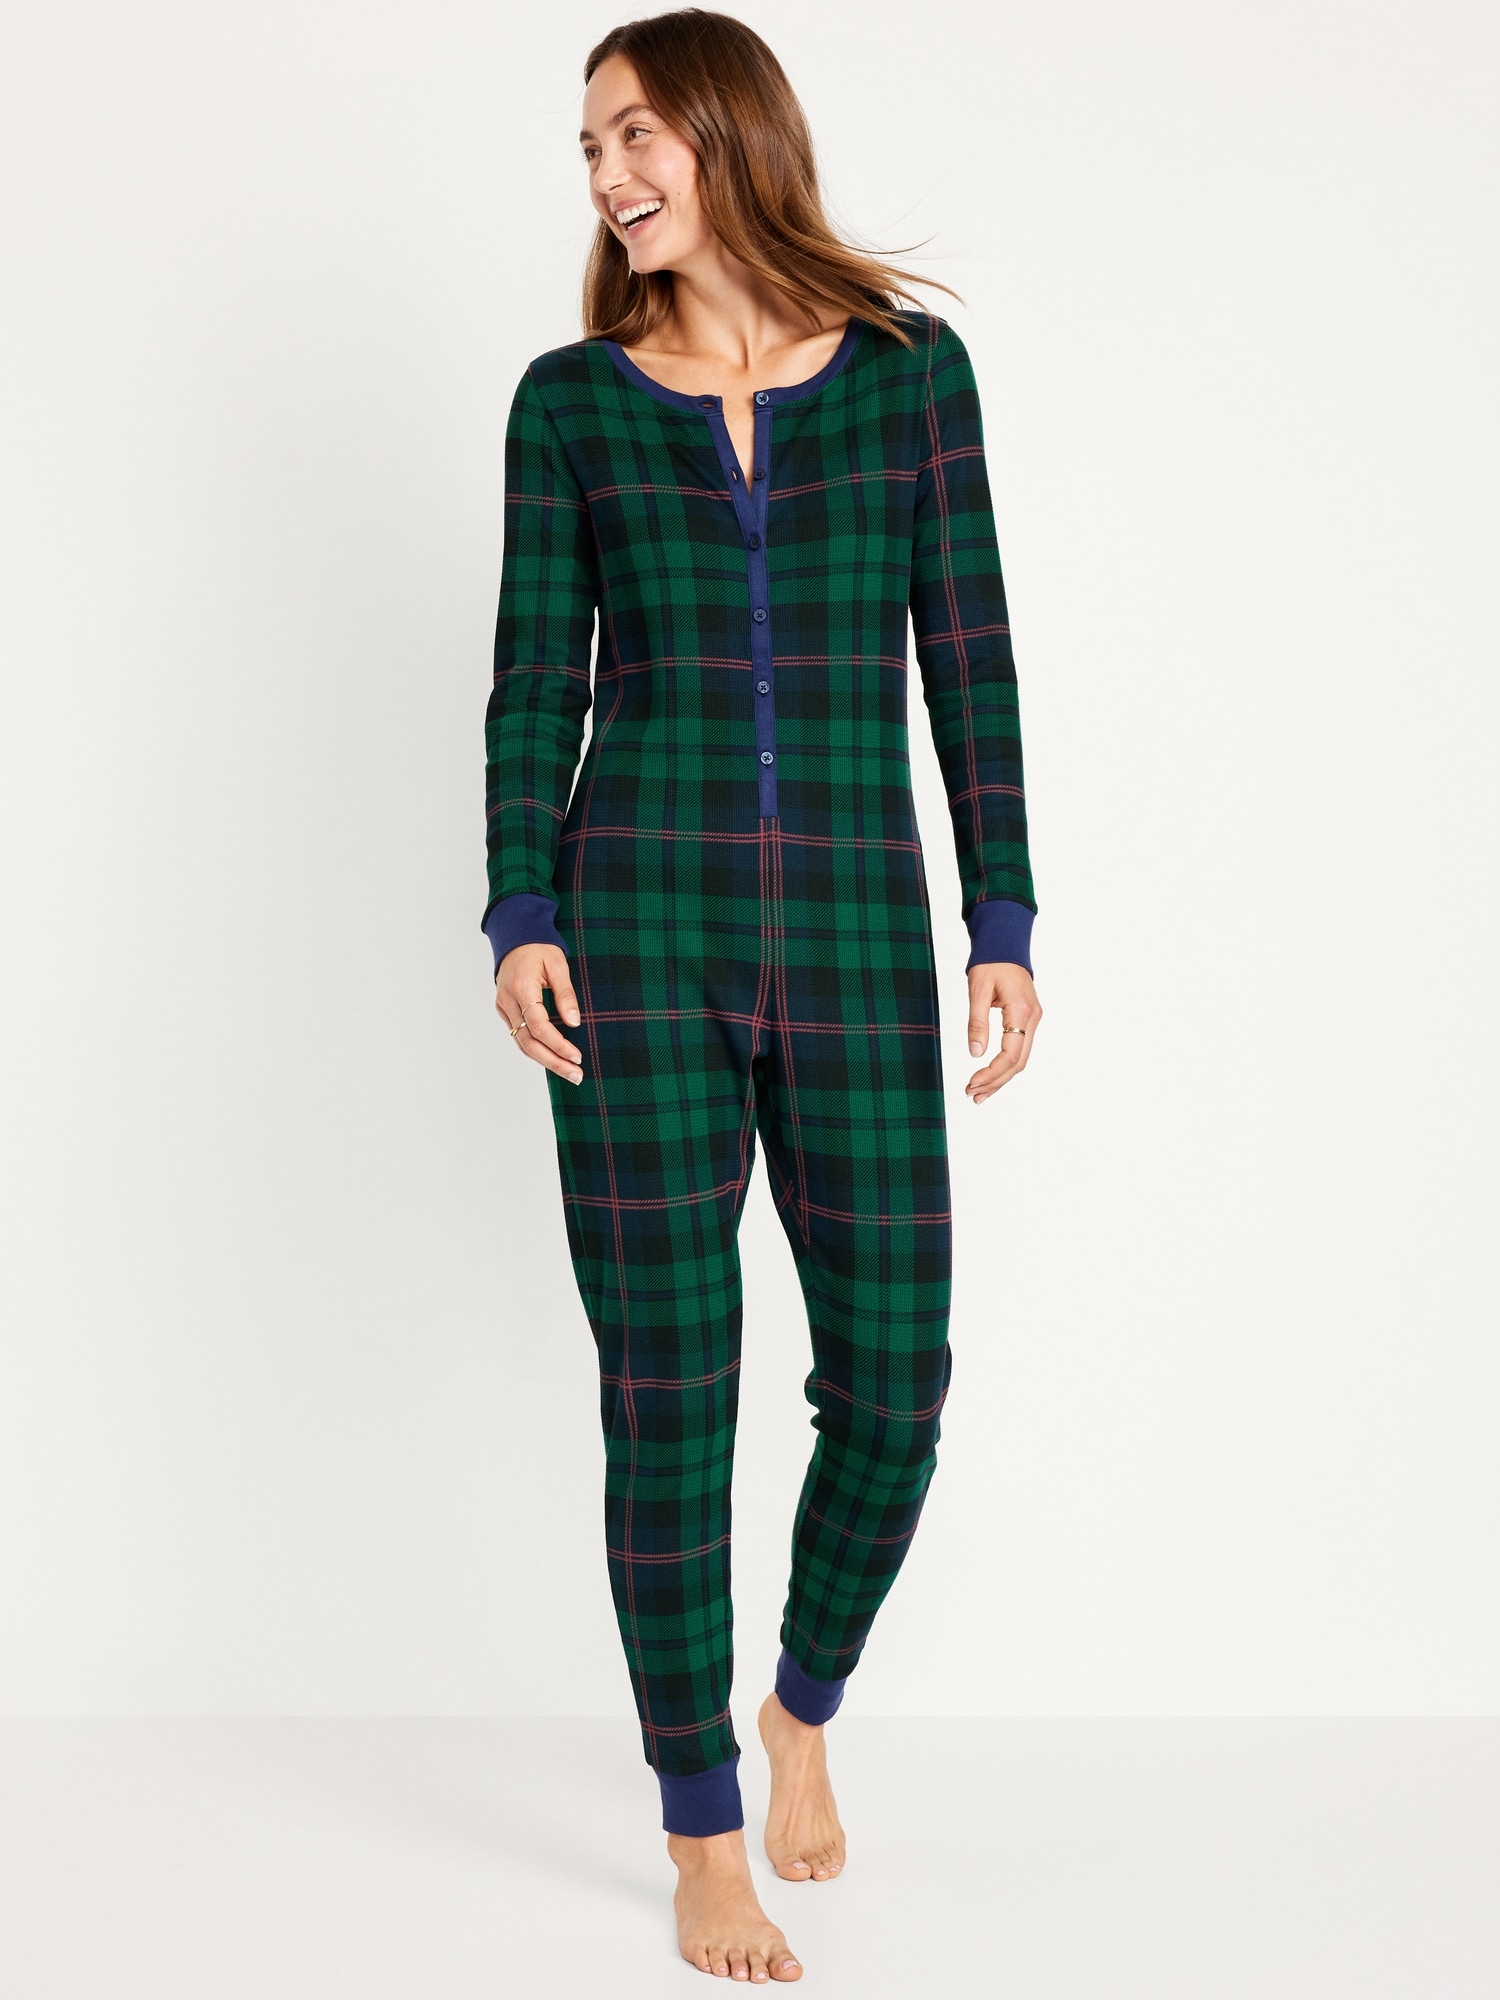 Cozy Christmas Pajamas, women's thermal pajamas, women's black